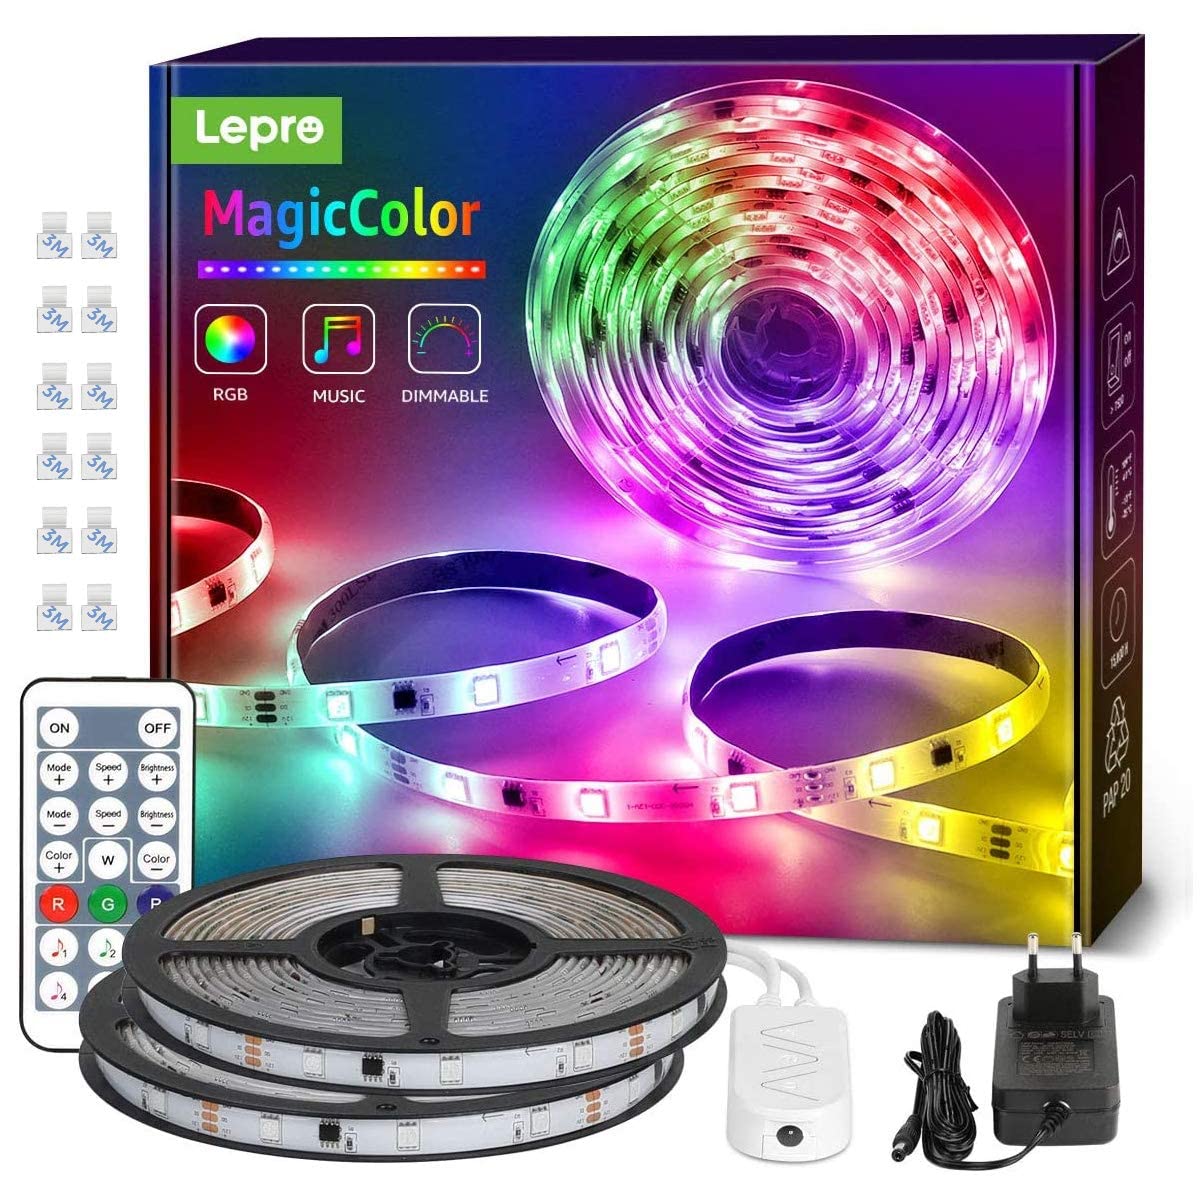 Lepro MagicColor LED Strip 10M(2x5M), 300 LEDs Streifen Dreamcolor, Lichterkette MagicColor, Musik Band mit Fernbedienung, Lichtband , Dimmbar Lichtleiste für Party Weihnachten Deko